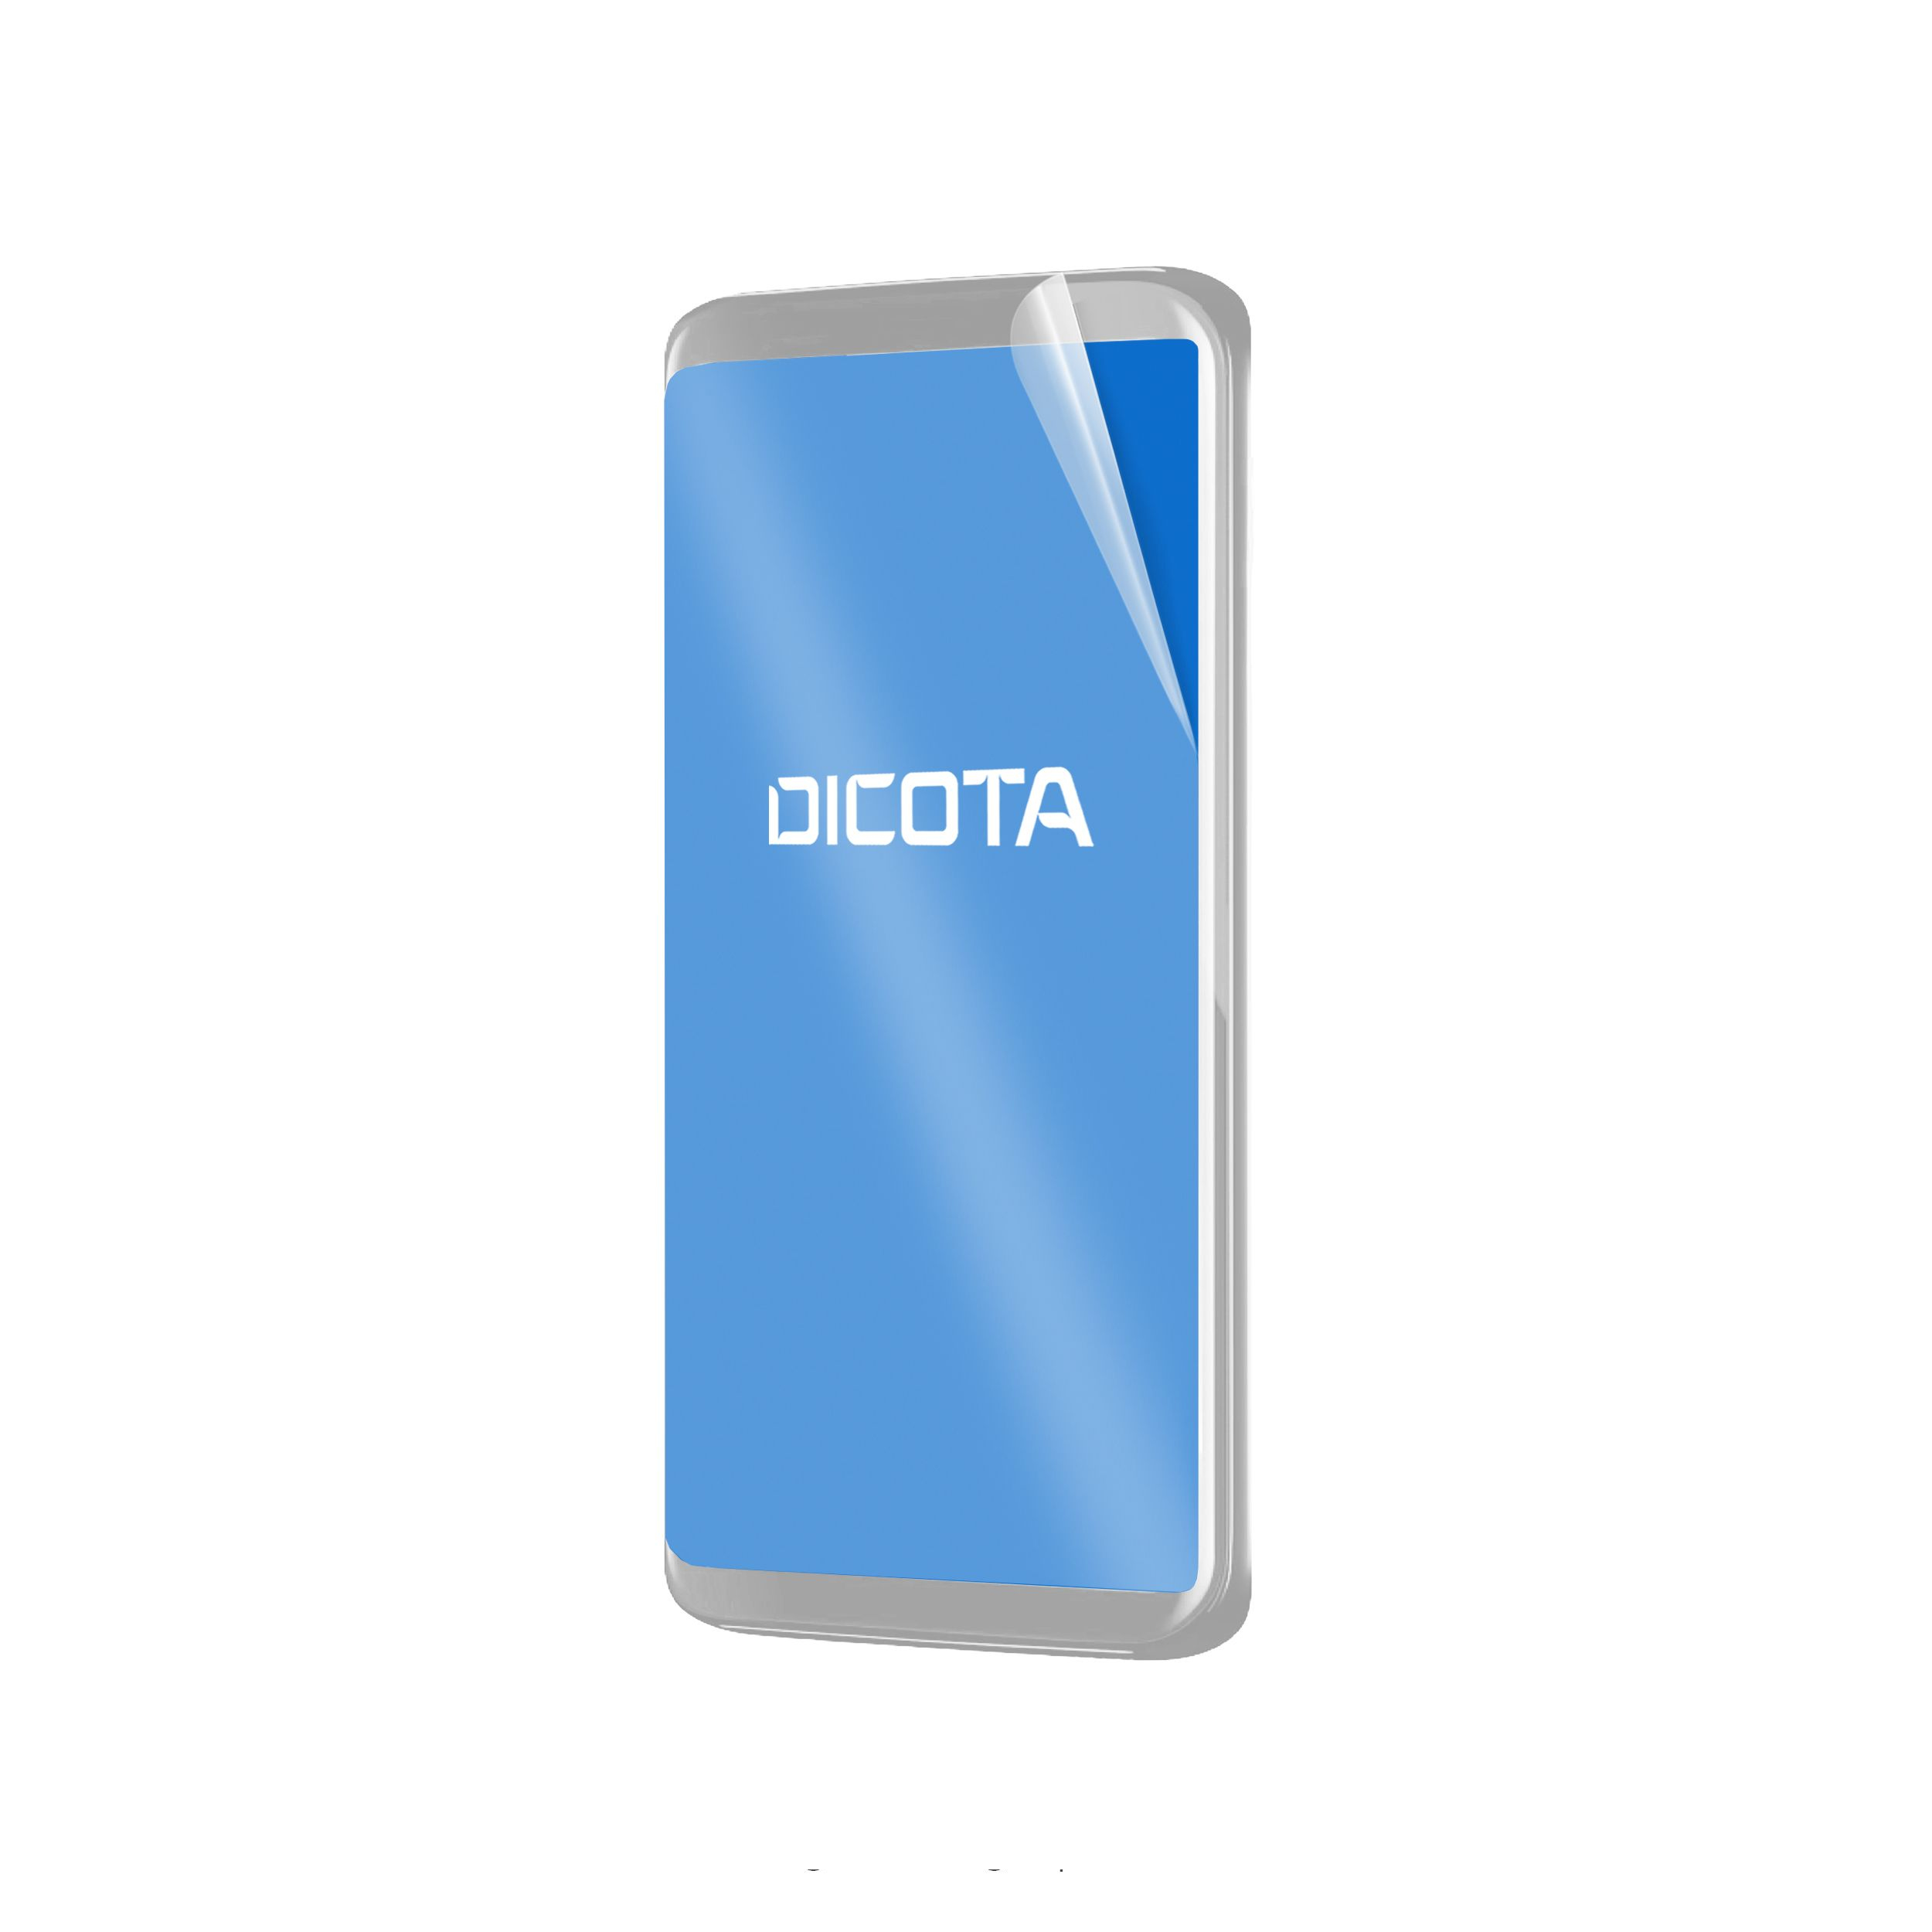 Dicota Bildschirmschutz für Handy - Folie - durchsichtig